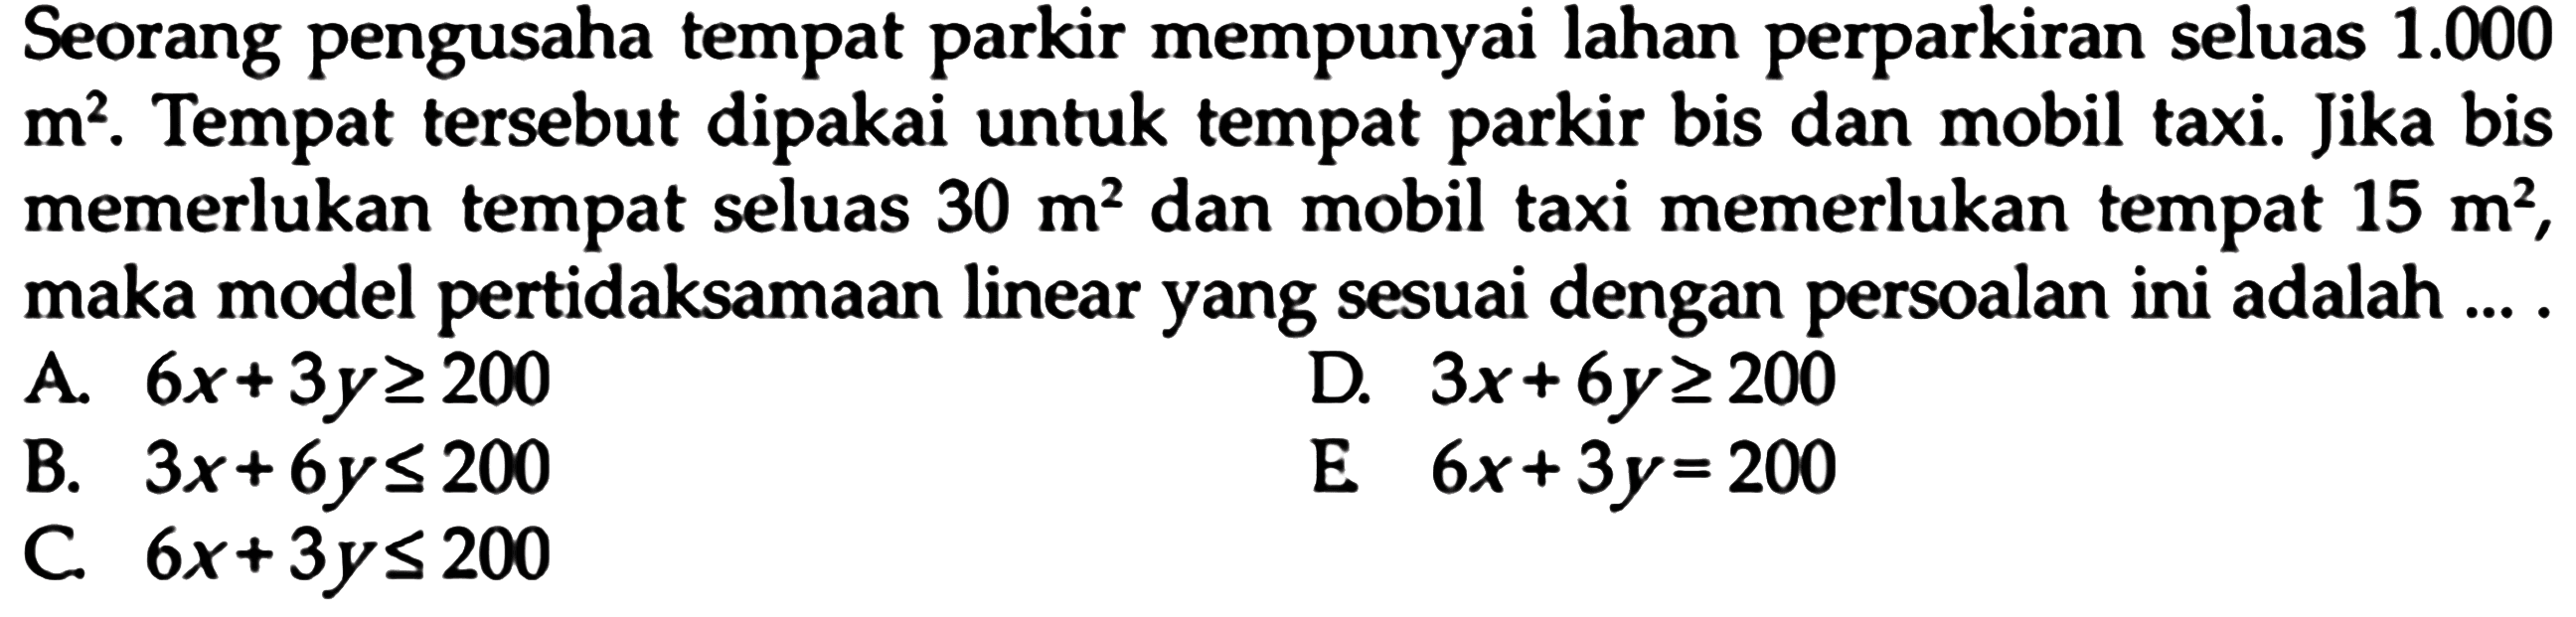 Seorang pengusaha tempat parkir mempunyai lahan perparkiran seluas 1.000 m^2. Tempat tersebut dipakai untuk tempat parkir bis dan mobil taxi. Jika bis memerlukan tempat seluas 30 m^2 dan mobil taxi memerlukan tempat 15 m^2, maka model pertidaksamaan linear yang sesuai dengan persoalan ini adalah ... A. 6x+3y>=200 D. 3x+6y>=200 E. 6x+3y=200 B. 3x+6y<=200 C. 6x+3y<=200